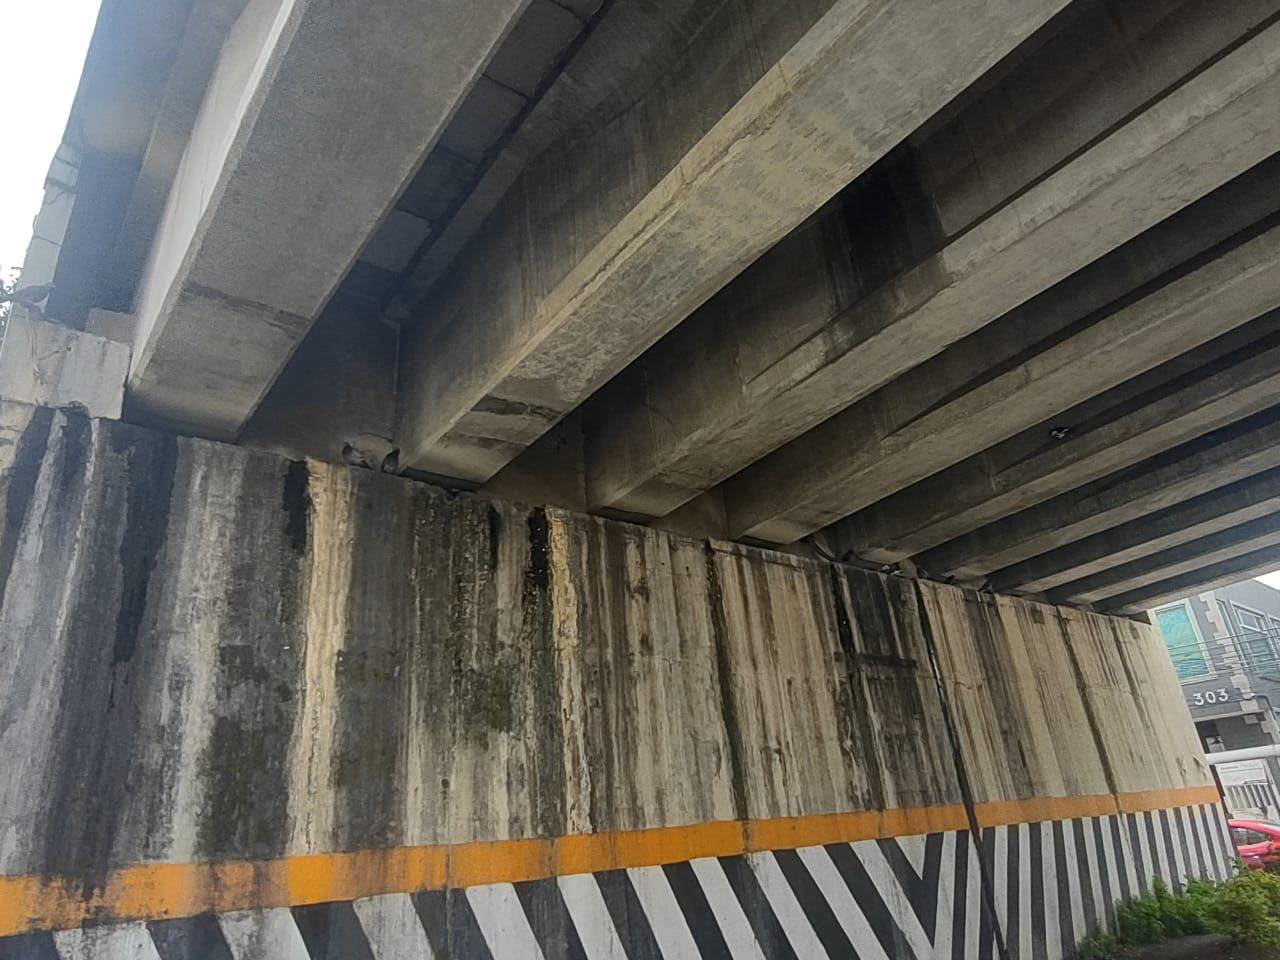 La junta de caminos del EdoMex descarta afectaciones en puente de Gustavo Baz en Naucalpan